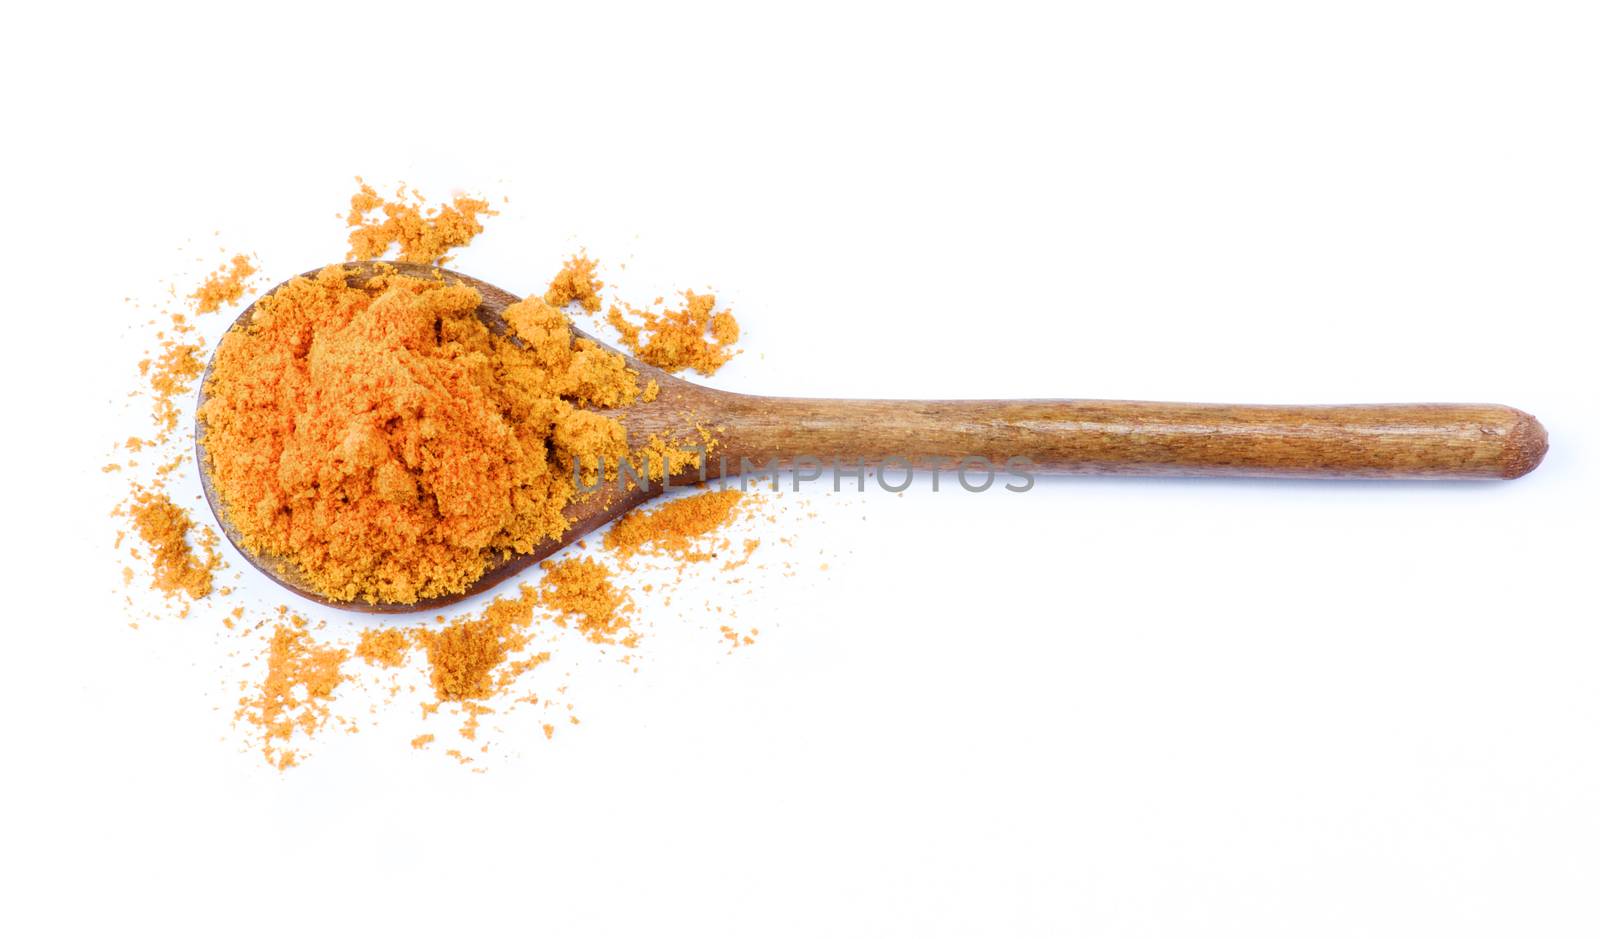 Curry Powder in Wooden Spoon by zhekos